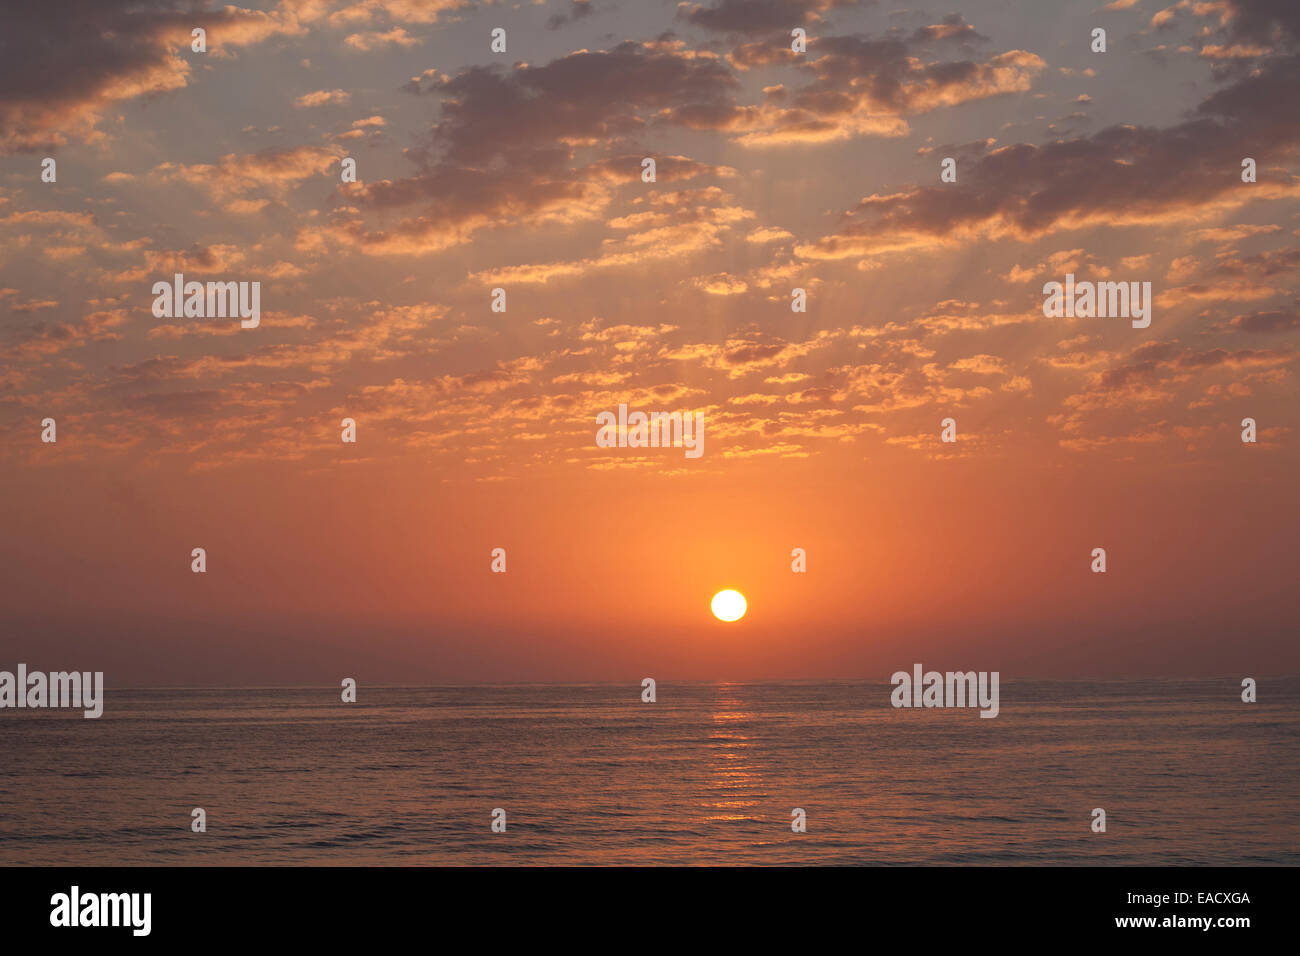 La puesta de sol sobre el mar, Ras al Jinz, Omán Foto de stock